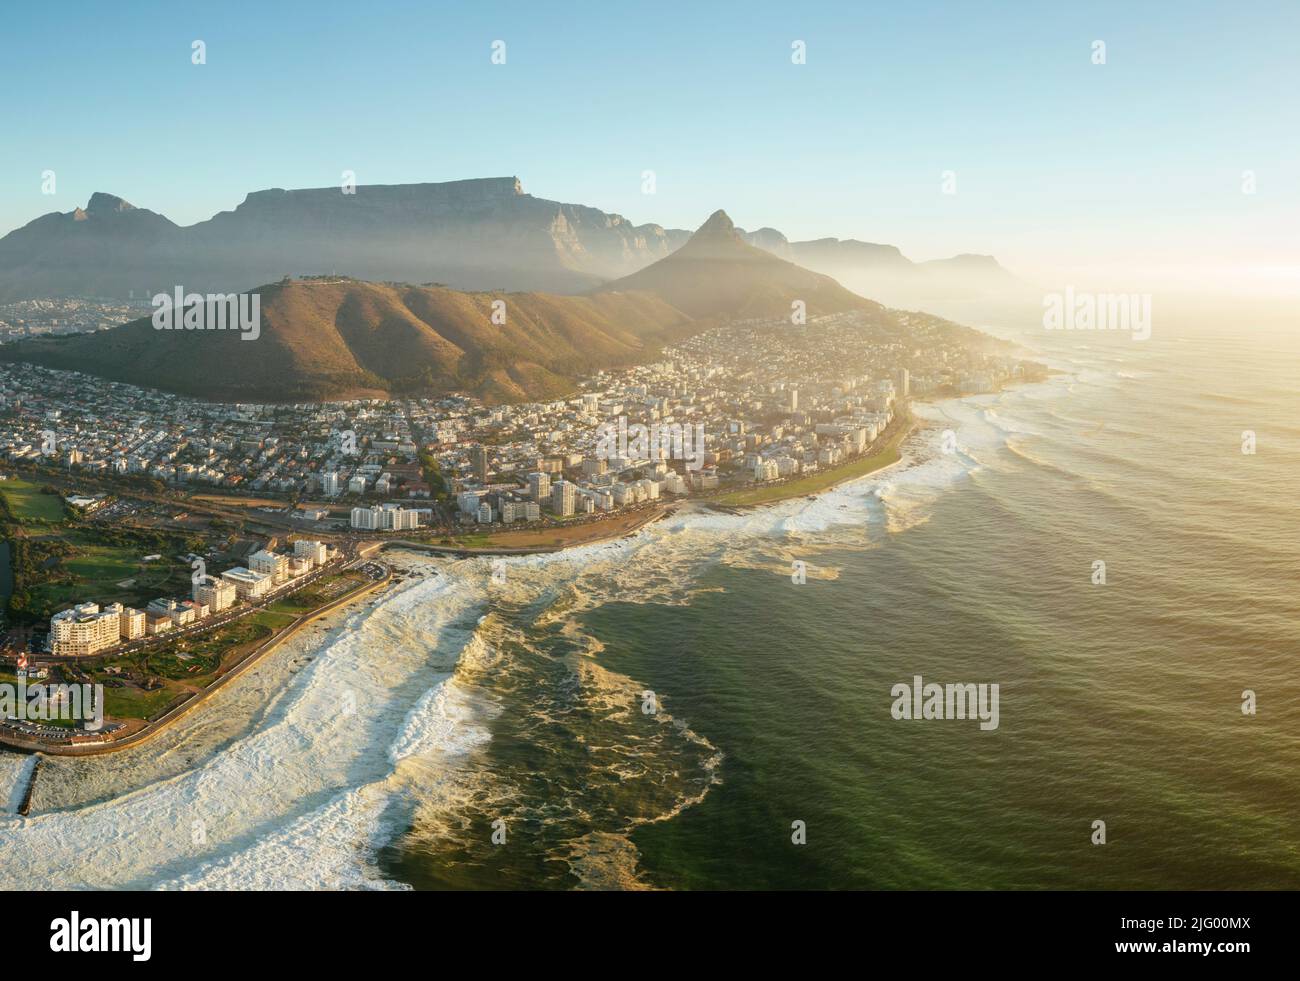 Vue aérienne de Green point sur le Cap, le Cap occidental, l'Afrique du Sud, l'Afrique Banque D'Images